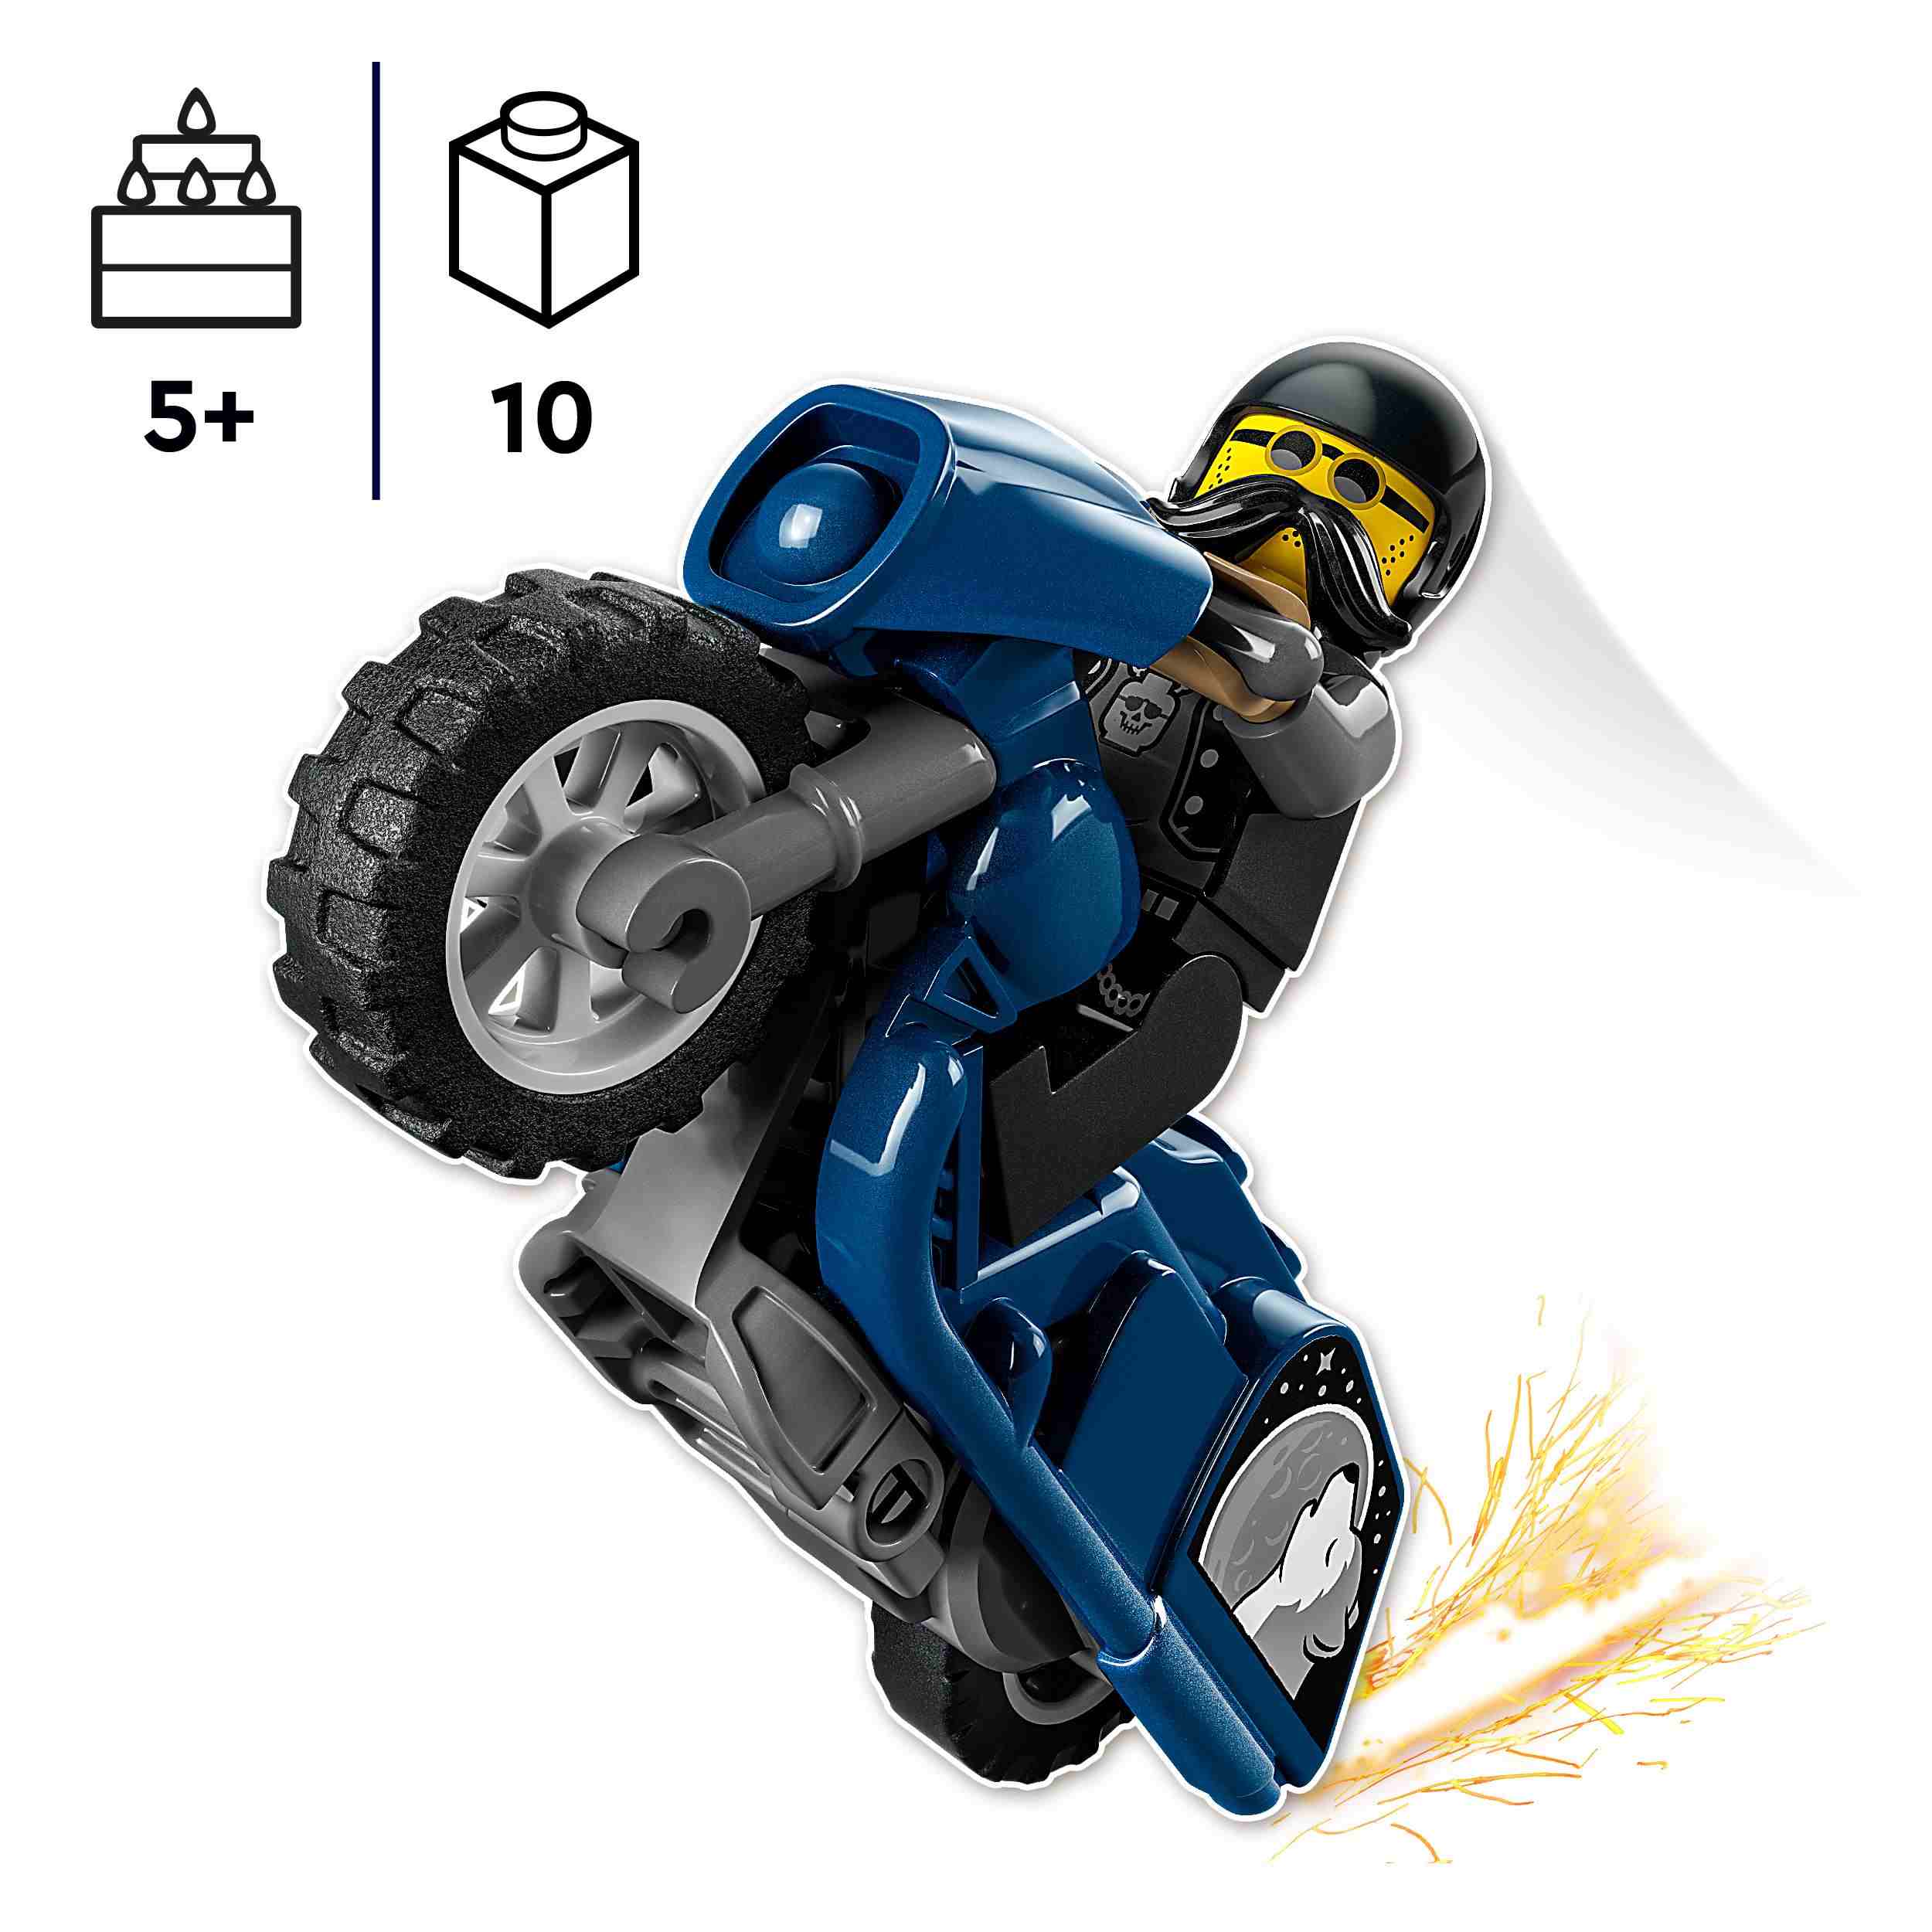 Lego city stuntz 60331 stunt bike da touring, moto giocattolo con minifigure, giochi per bambini dai 5 anni, idea regalo - LEGO CITY, LEGO CITY STUNTZ, Lego